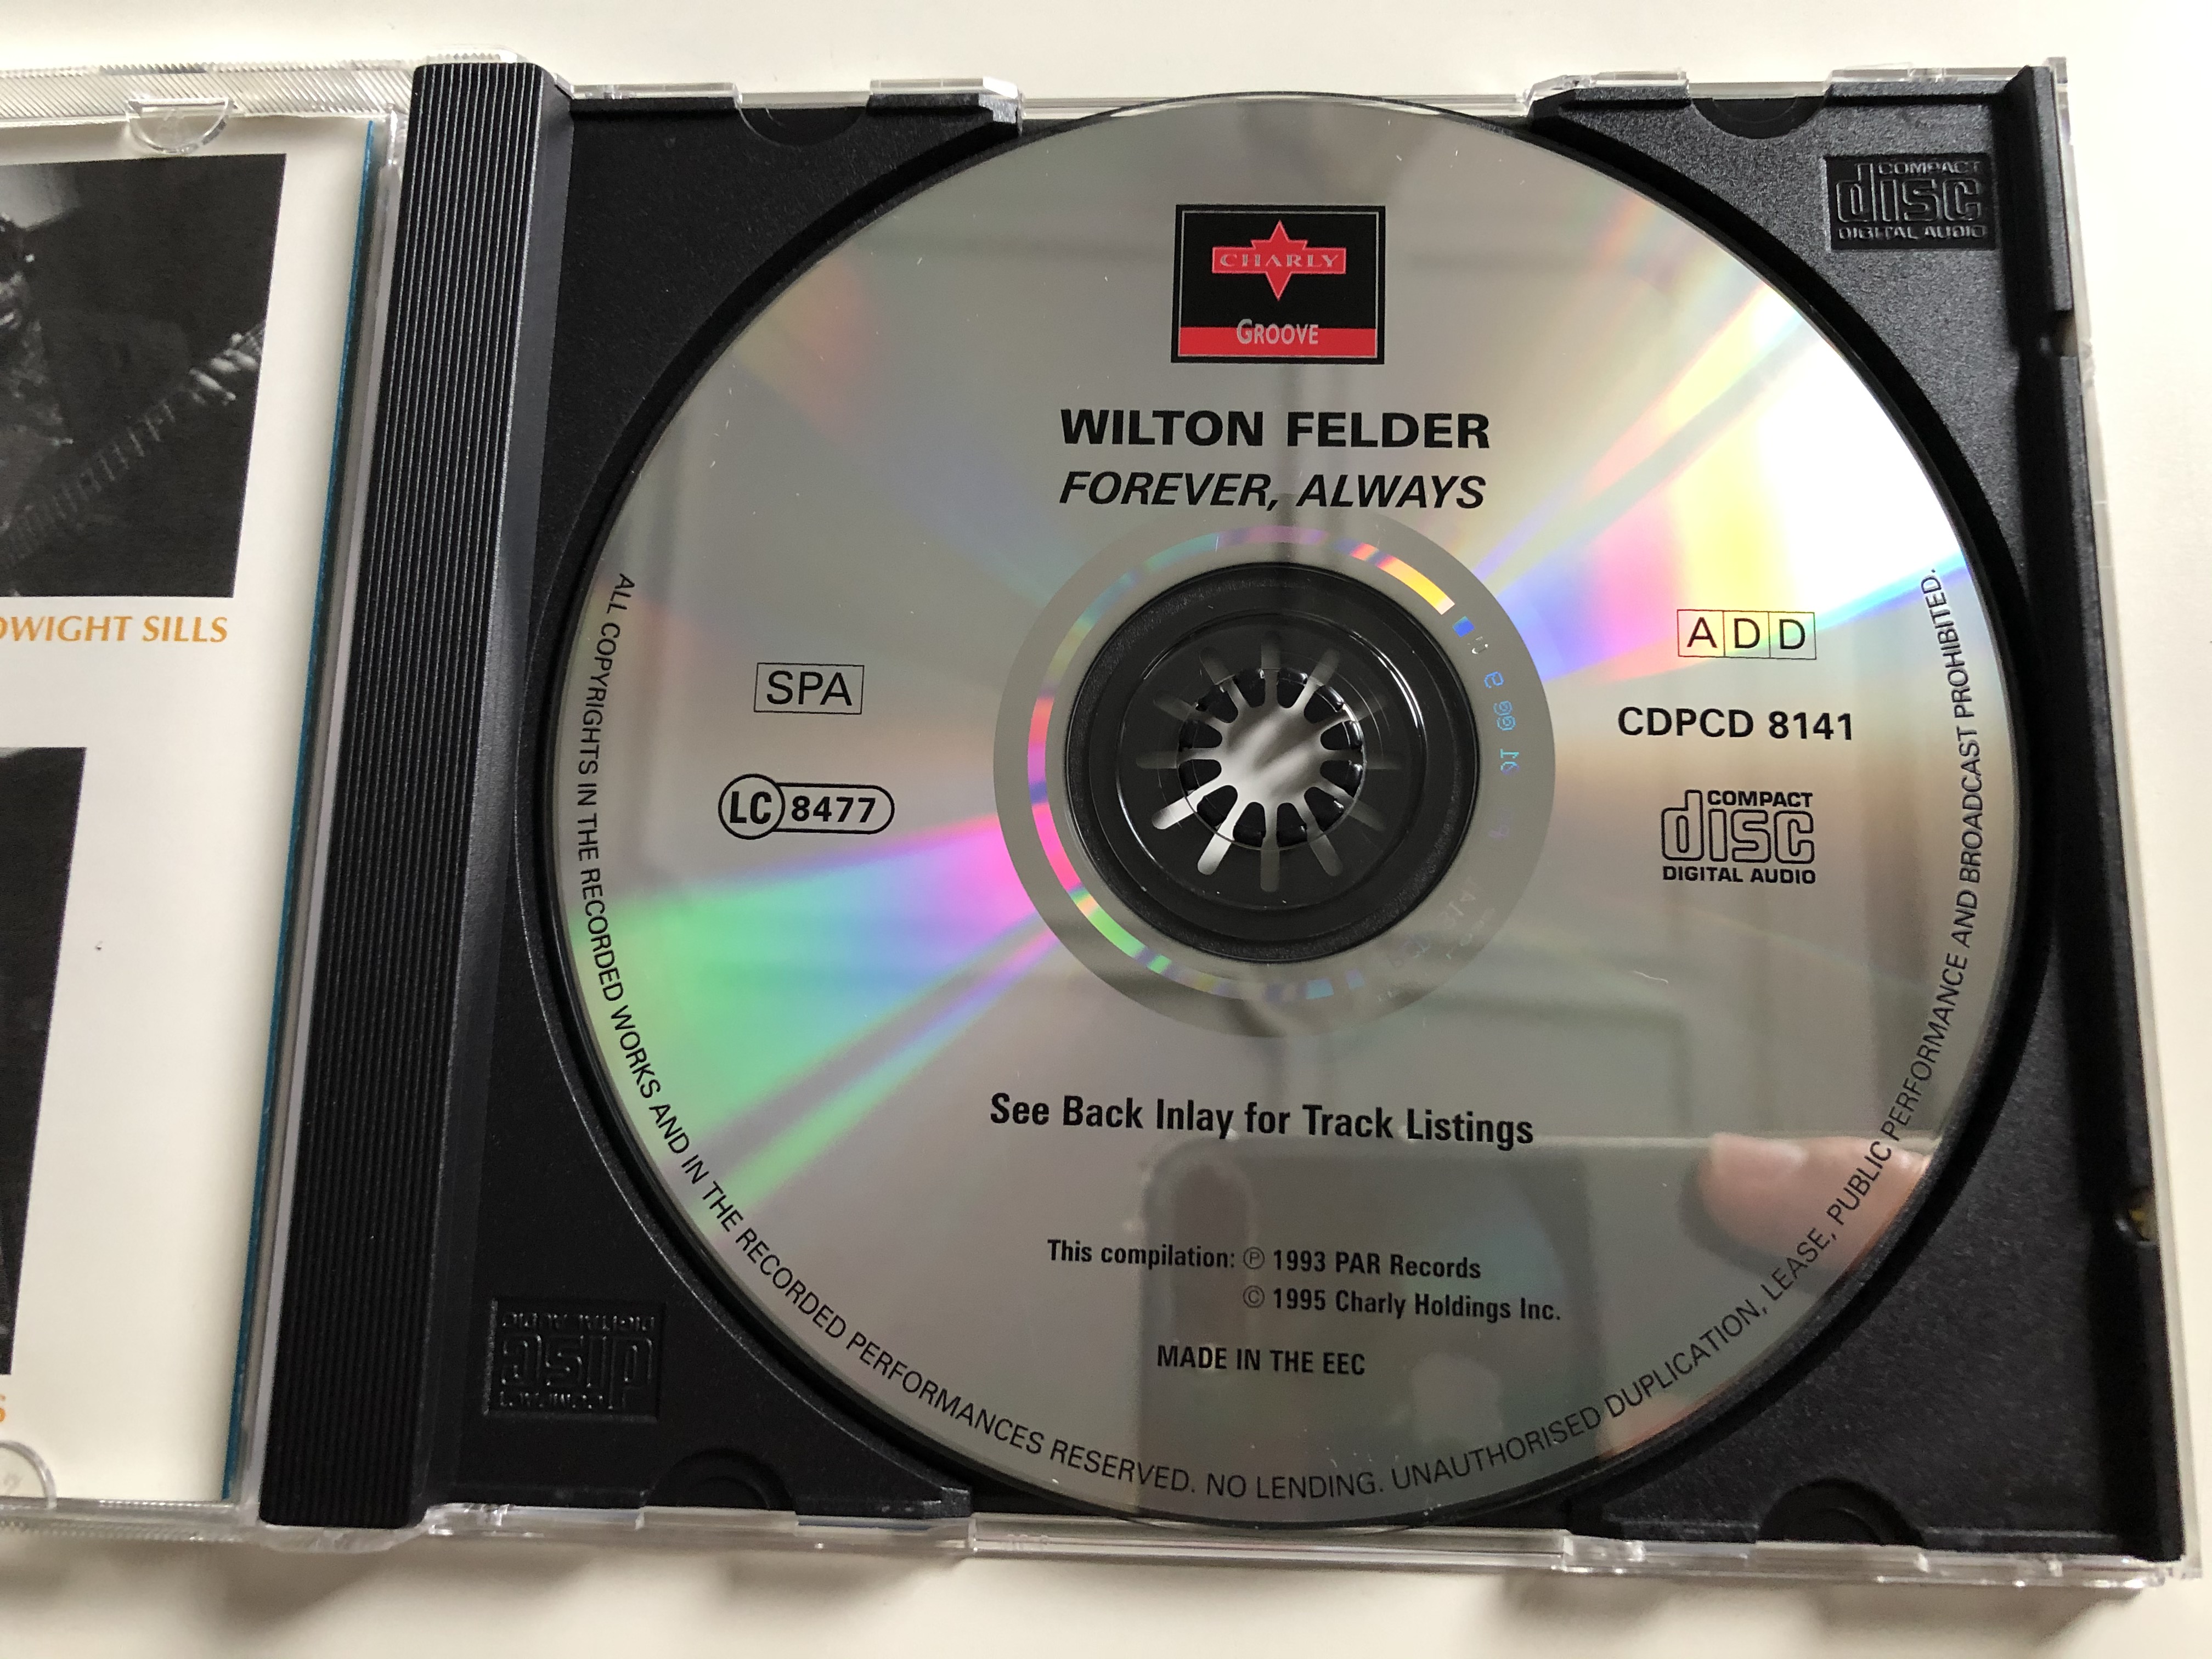 wilton-felder-forever-always-charly-groove-audio-cd-1995-cpcd-8141-7-.jpg